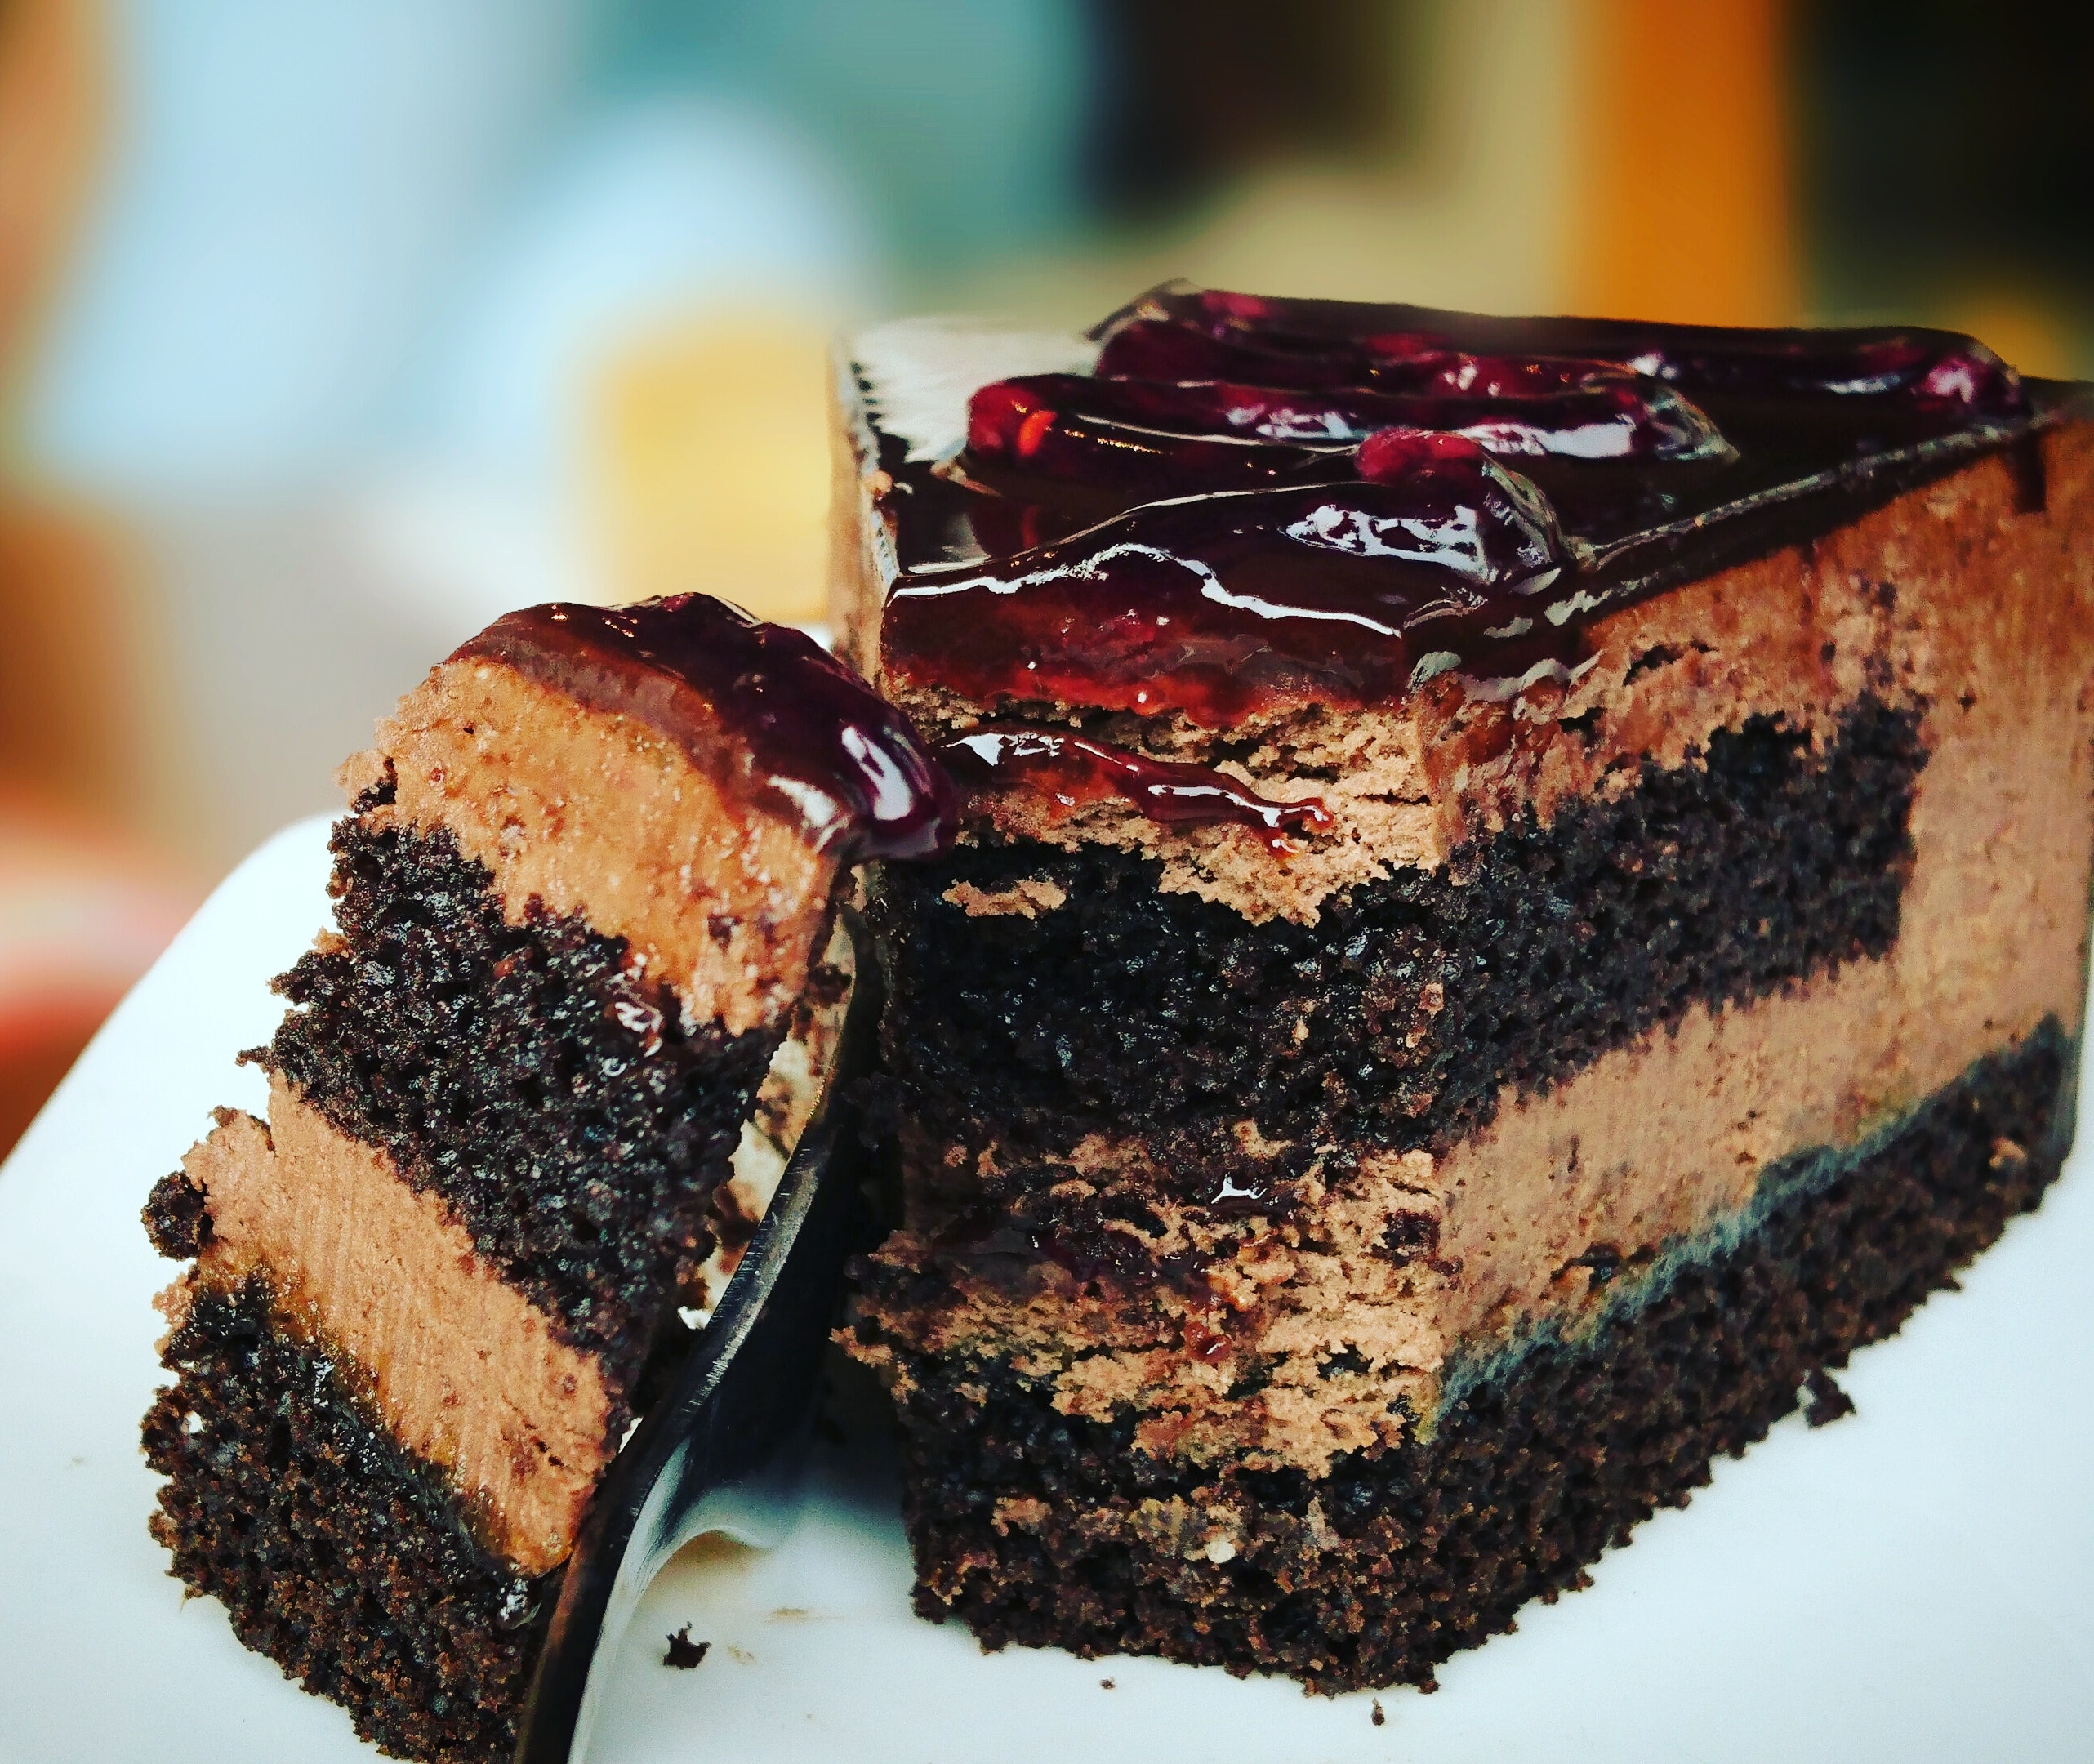 Rachel's Cake: viaje culinario